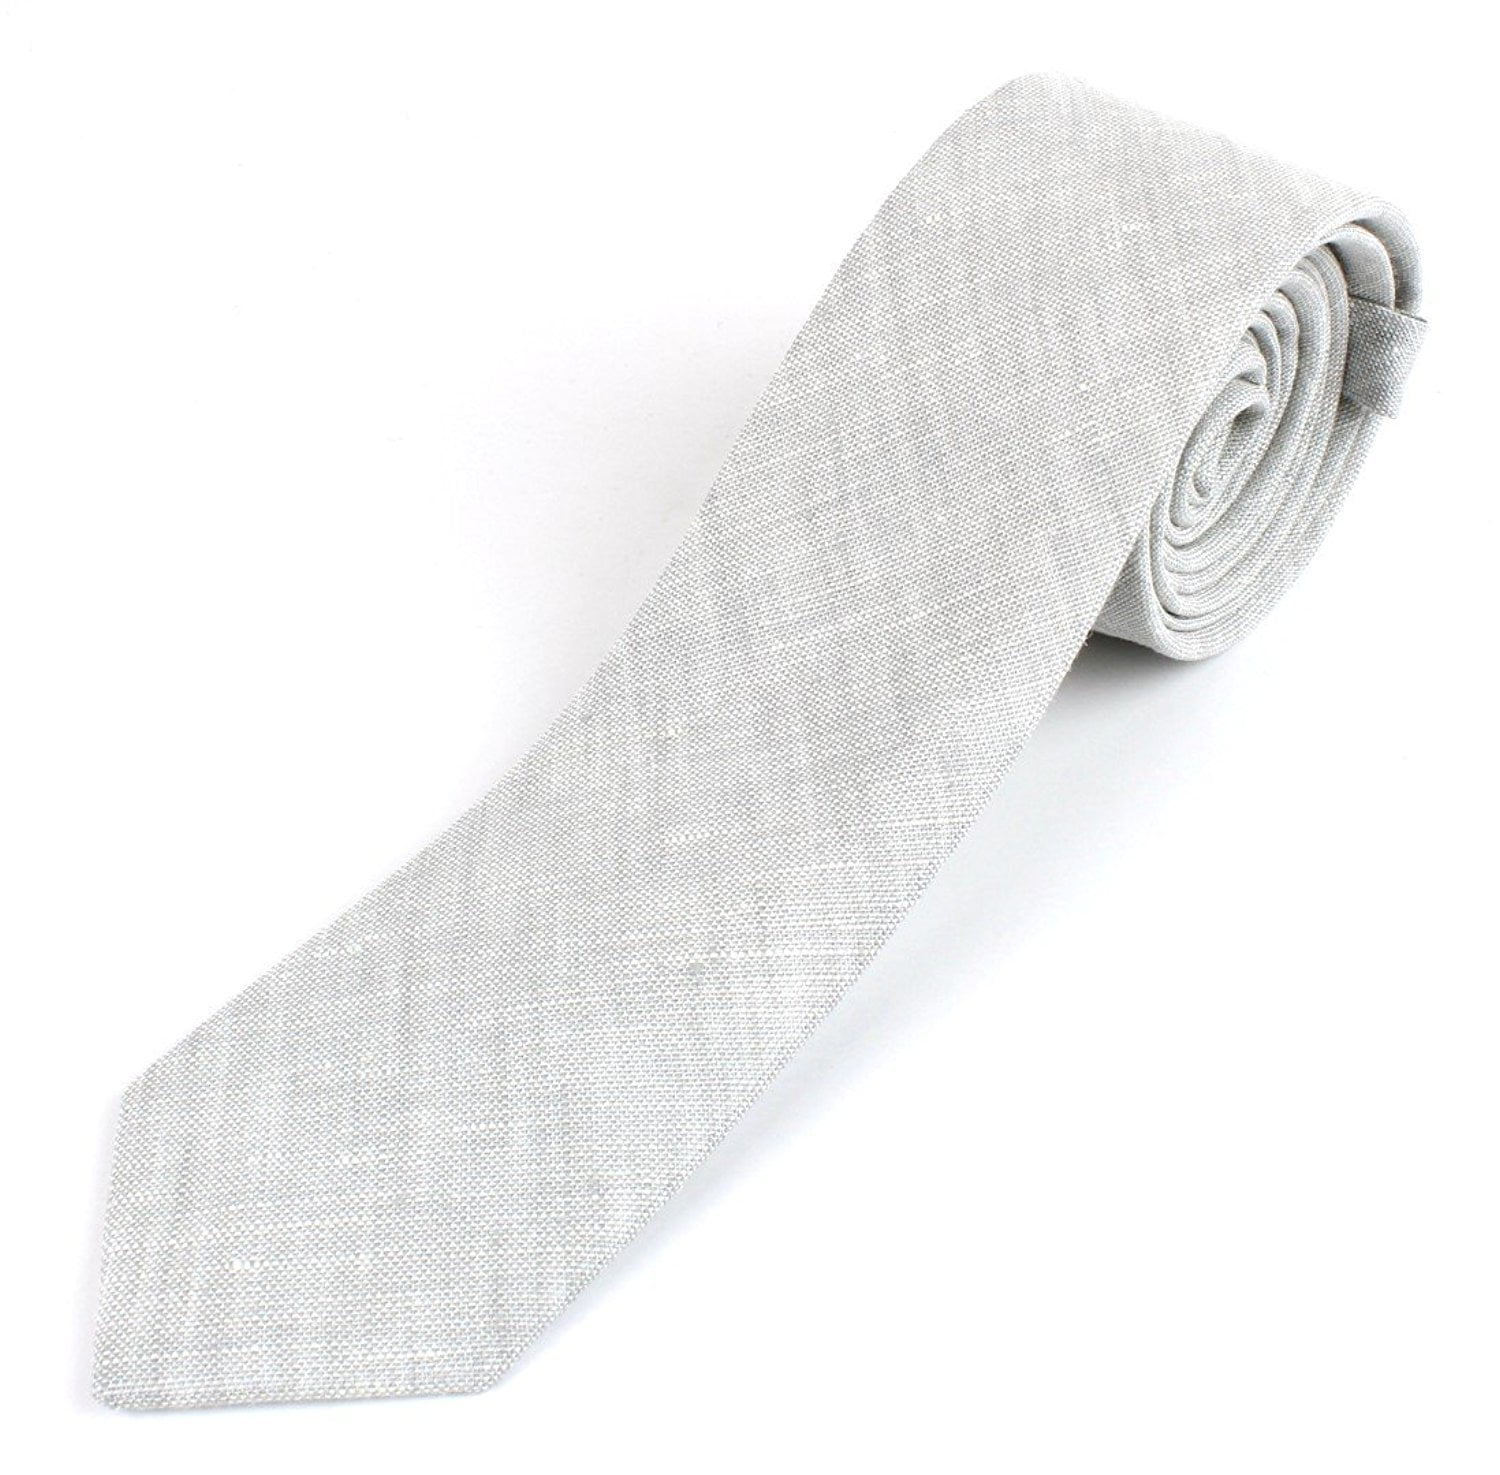 2 1/2 Width Tie Mens Wool Knit Skinny Vintage Weave Necktie Tie Textured Worn Style